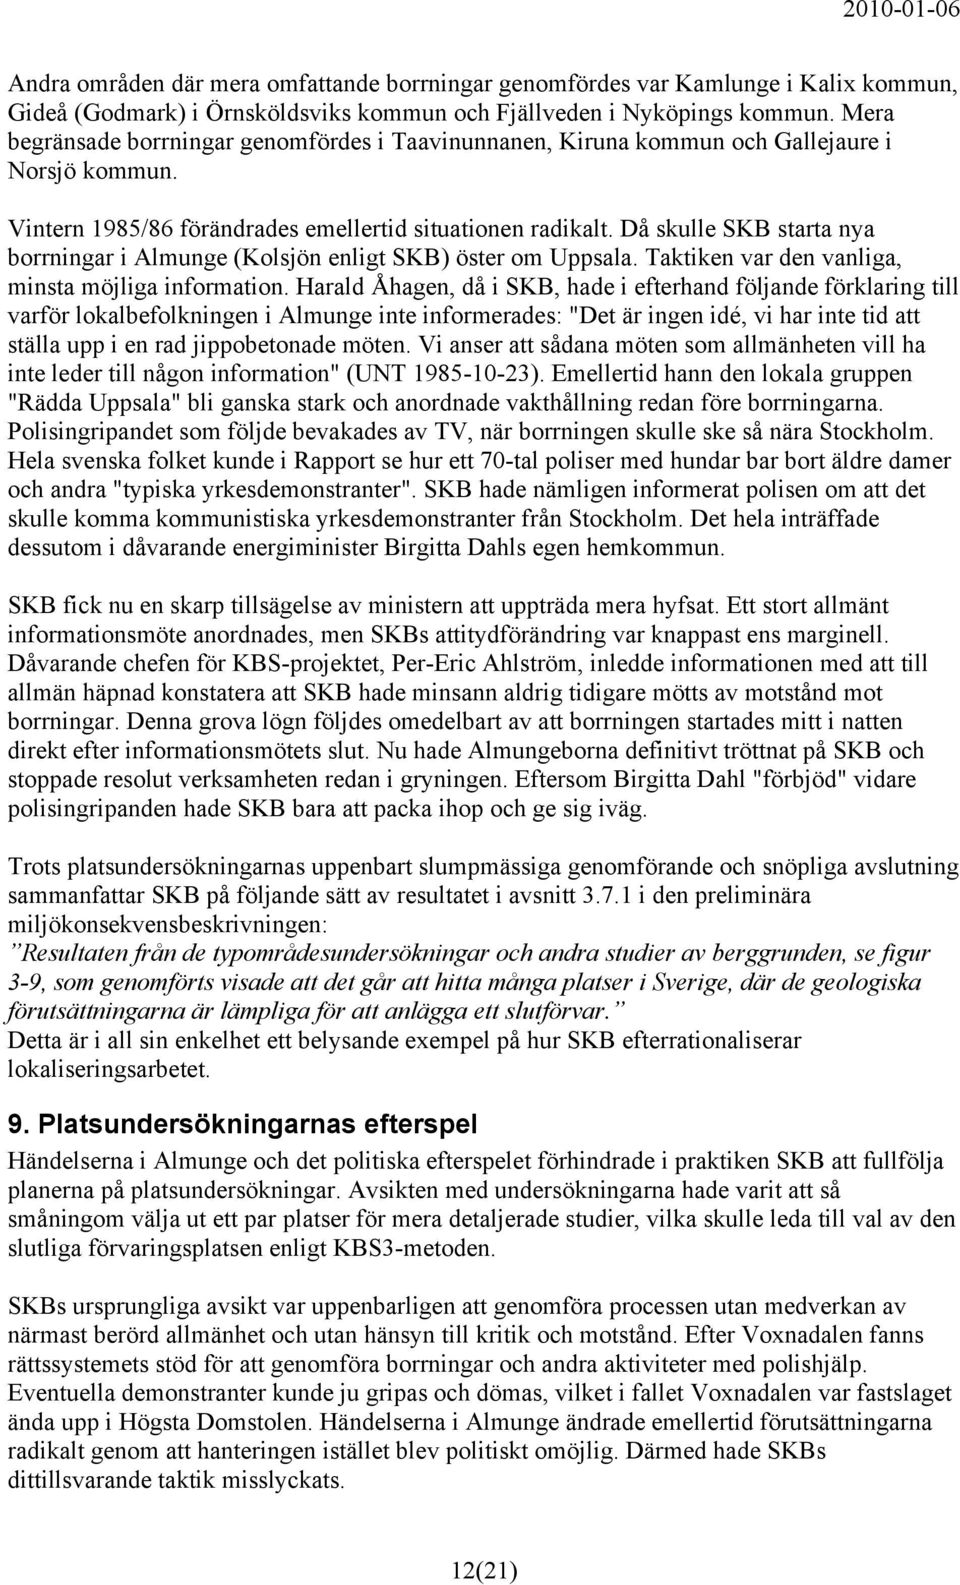 Då skulle SKB starta nya borrningar i Almunge (Kolsjön enligt SKB) öster om Uppsala. Taktiken var den vanliga, minsta möjliga information.